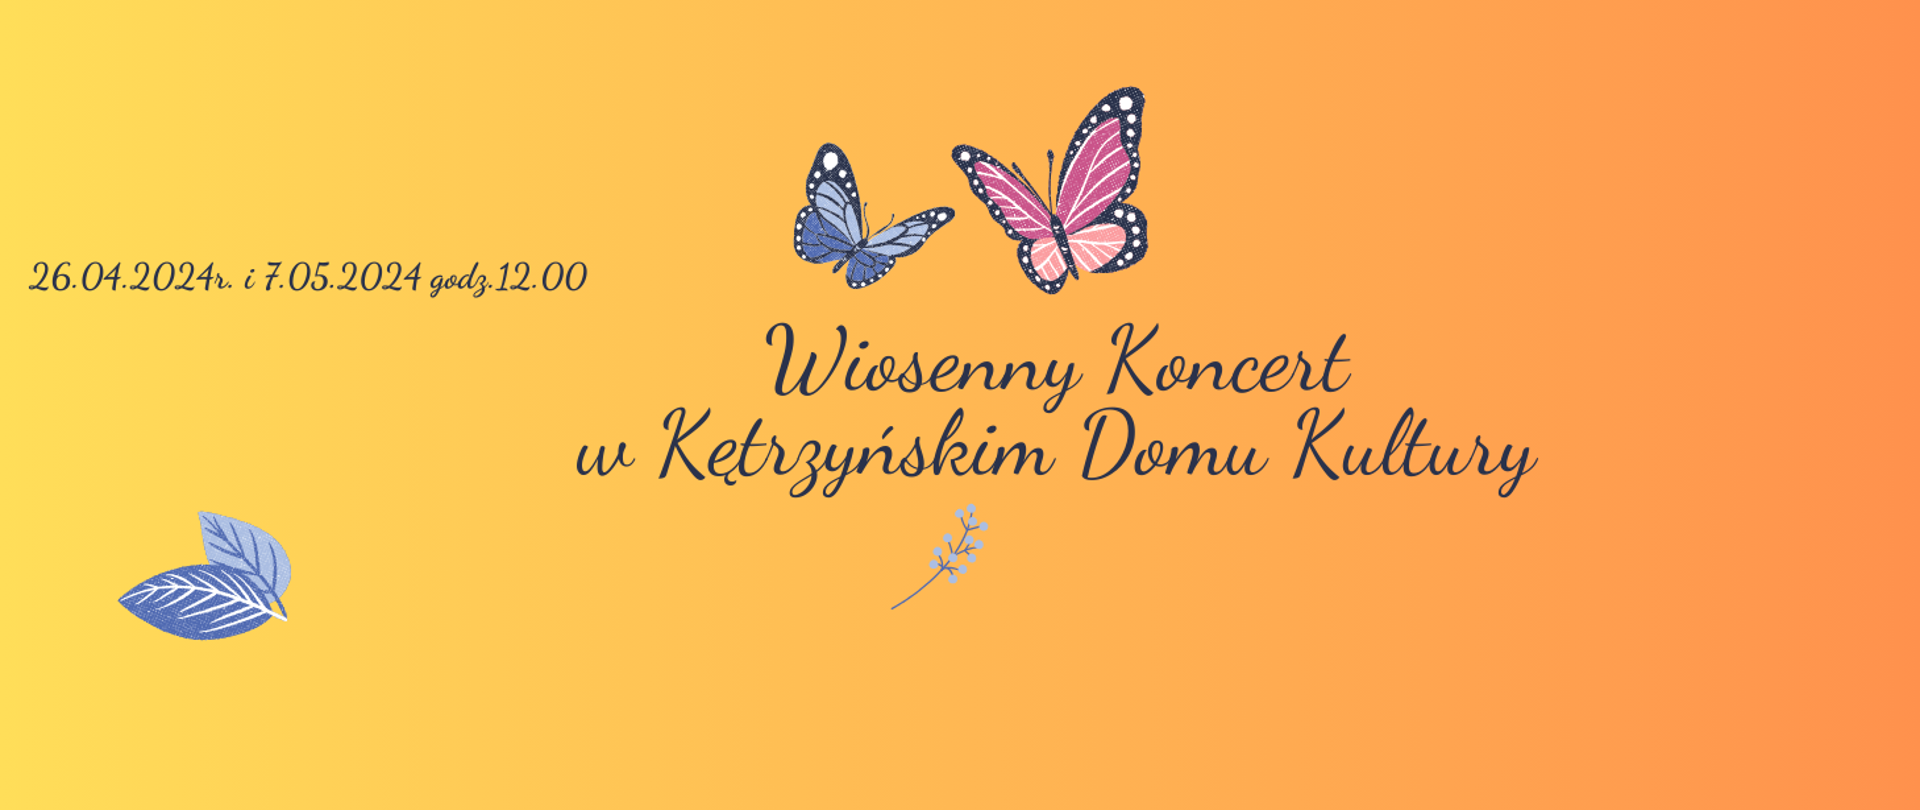 Plakat na żółtym tle dwa kolorowe motyle, napis-wiosenny koncert w Kętrzyńskim Domu Kultury 26.04.2024 i 7.05.2024 godz.12.00